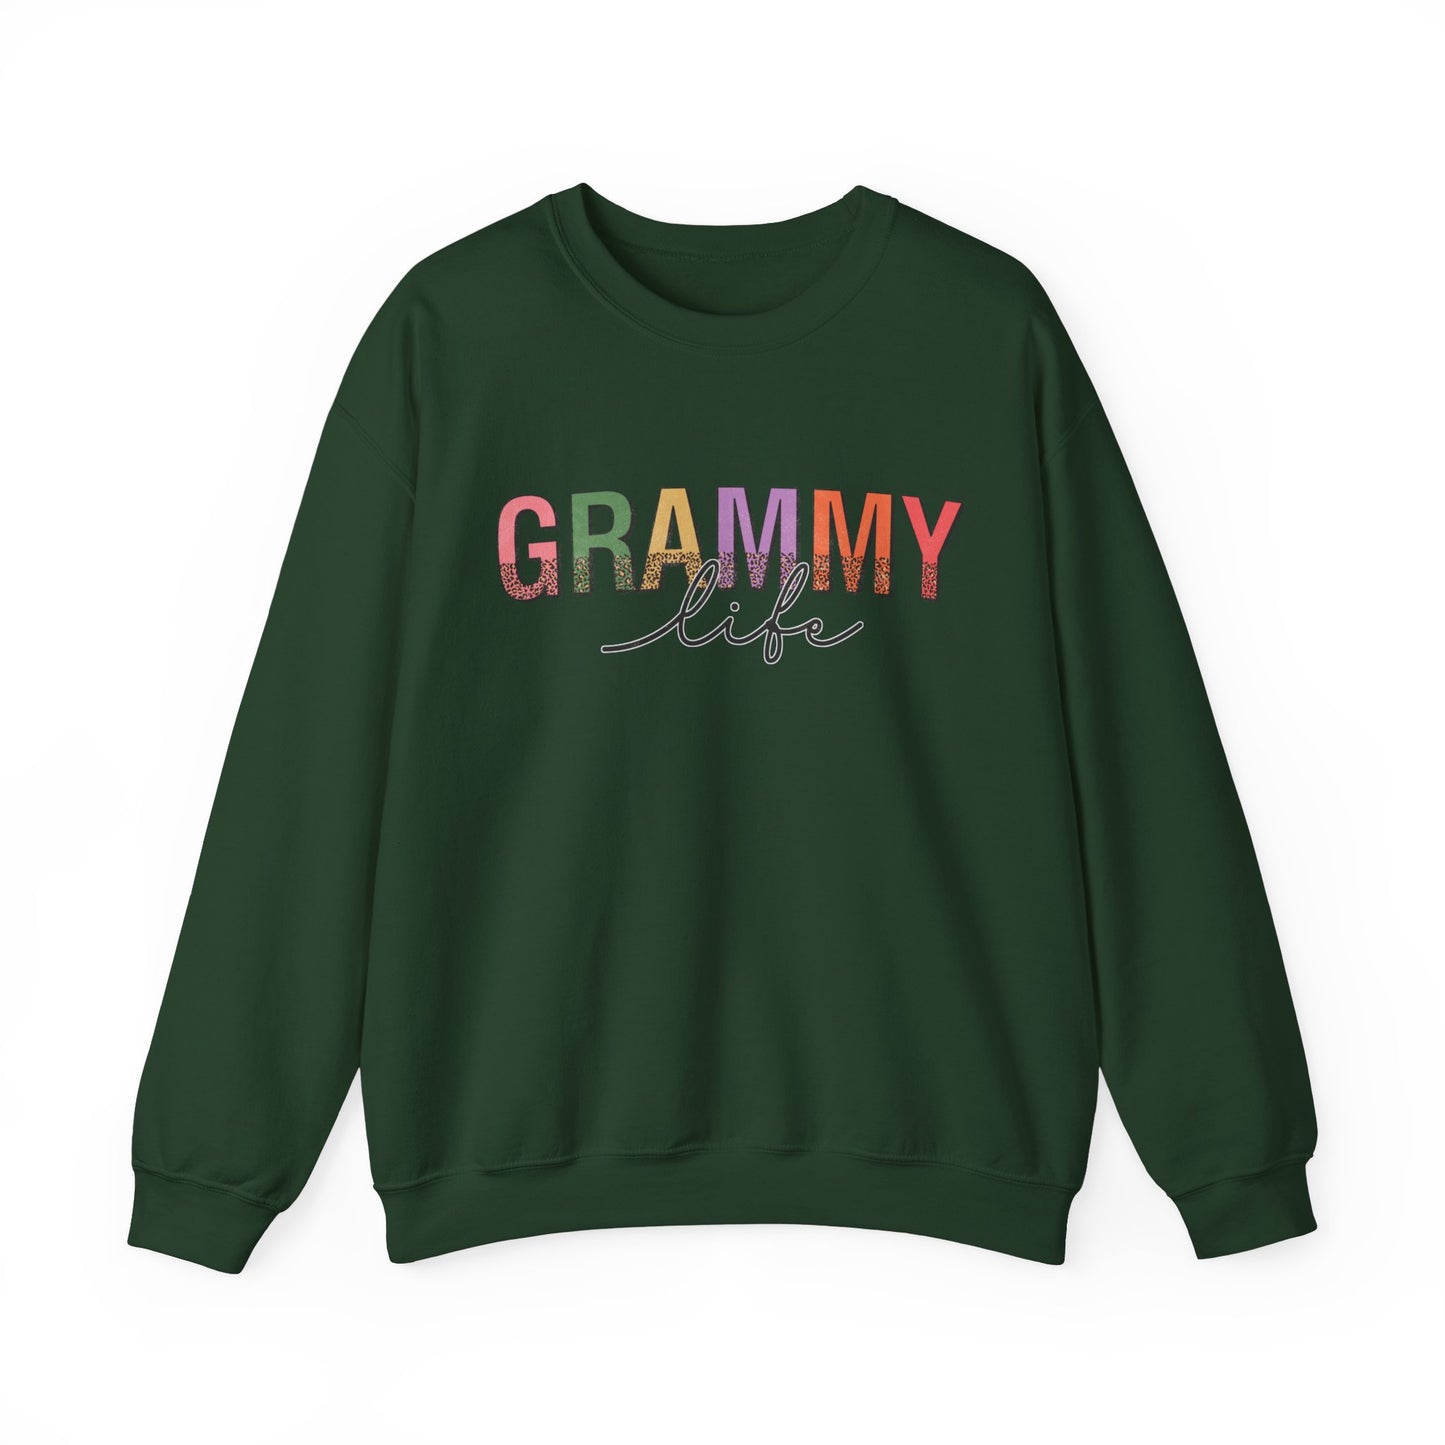 Grammy Life Grandma Women's Sweatshirt